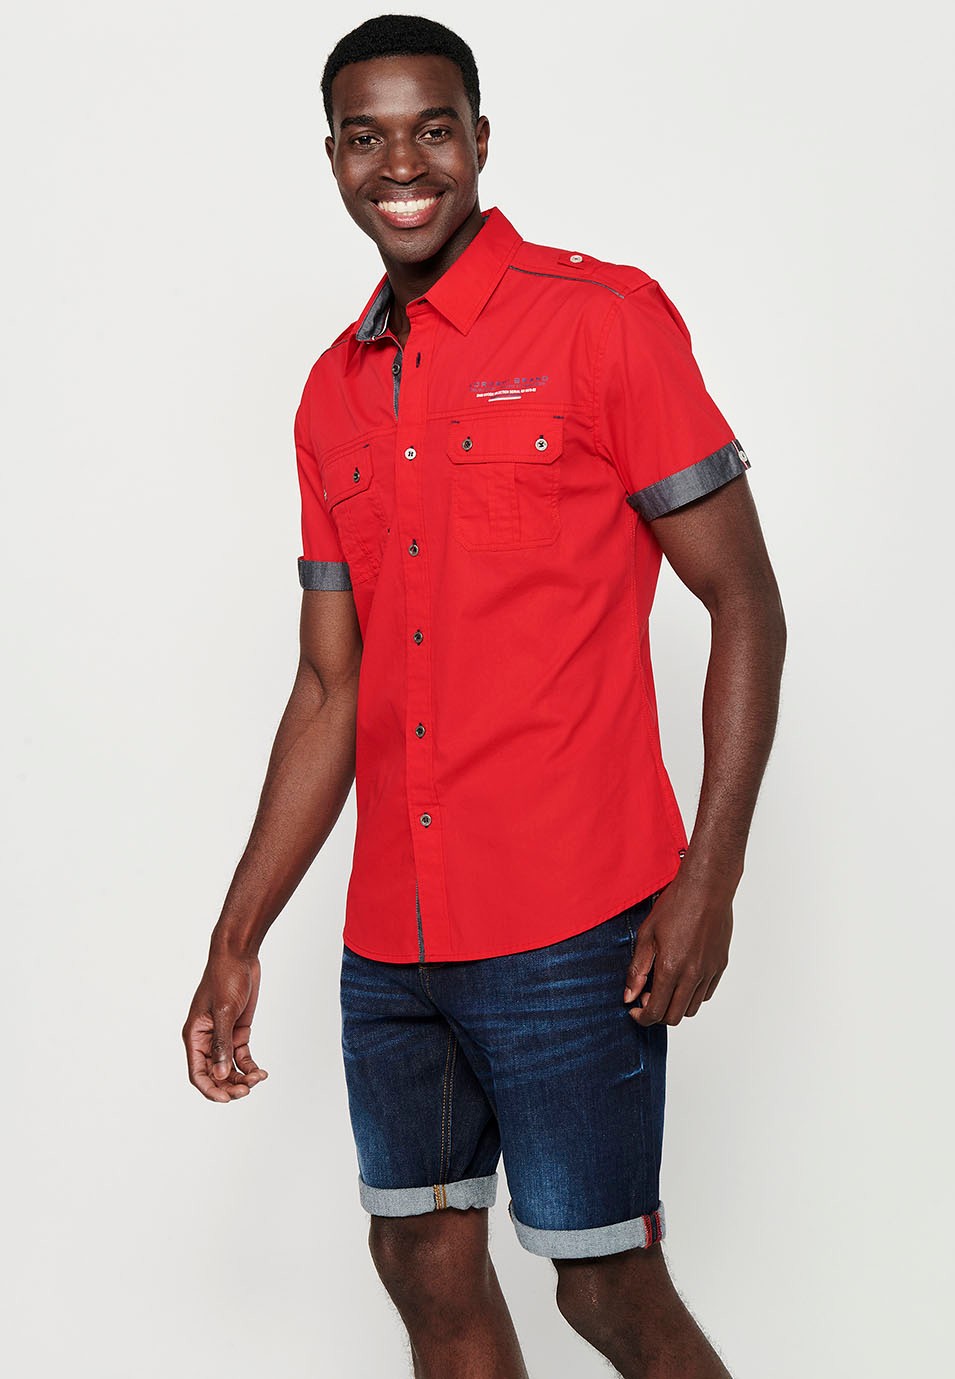 Chemise en coton, manches courtes, détails épaules, couleur rouge pour homme